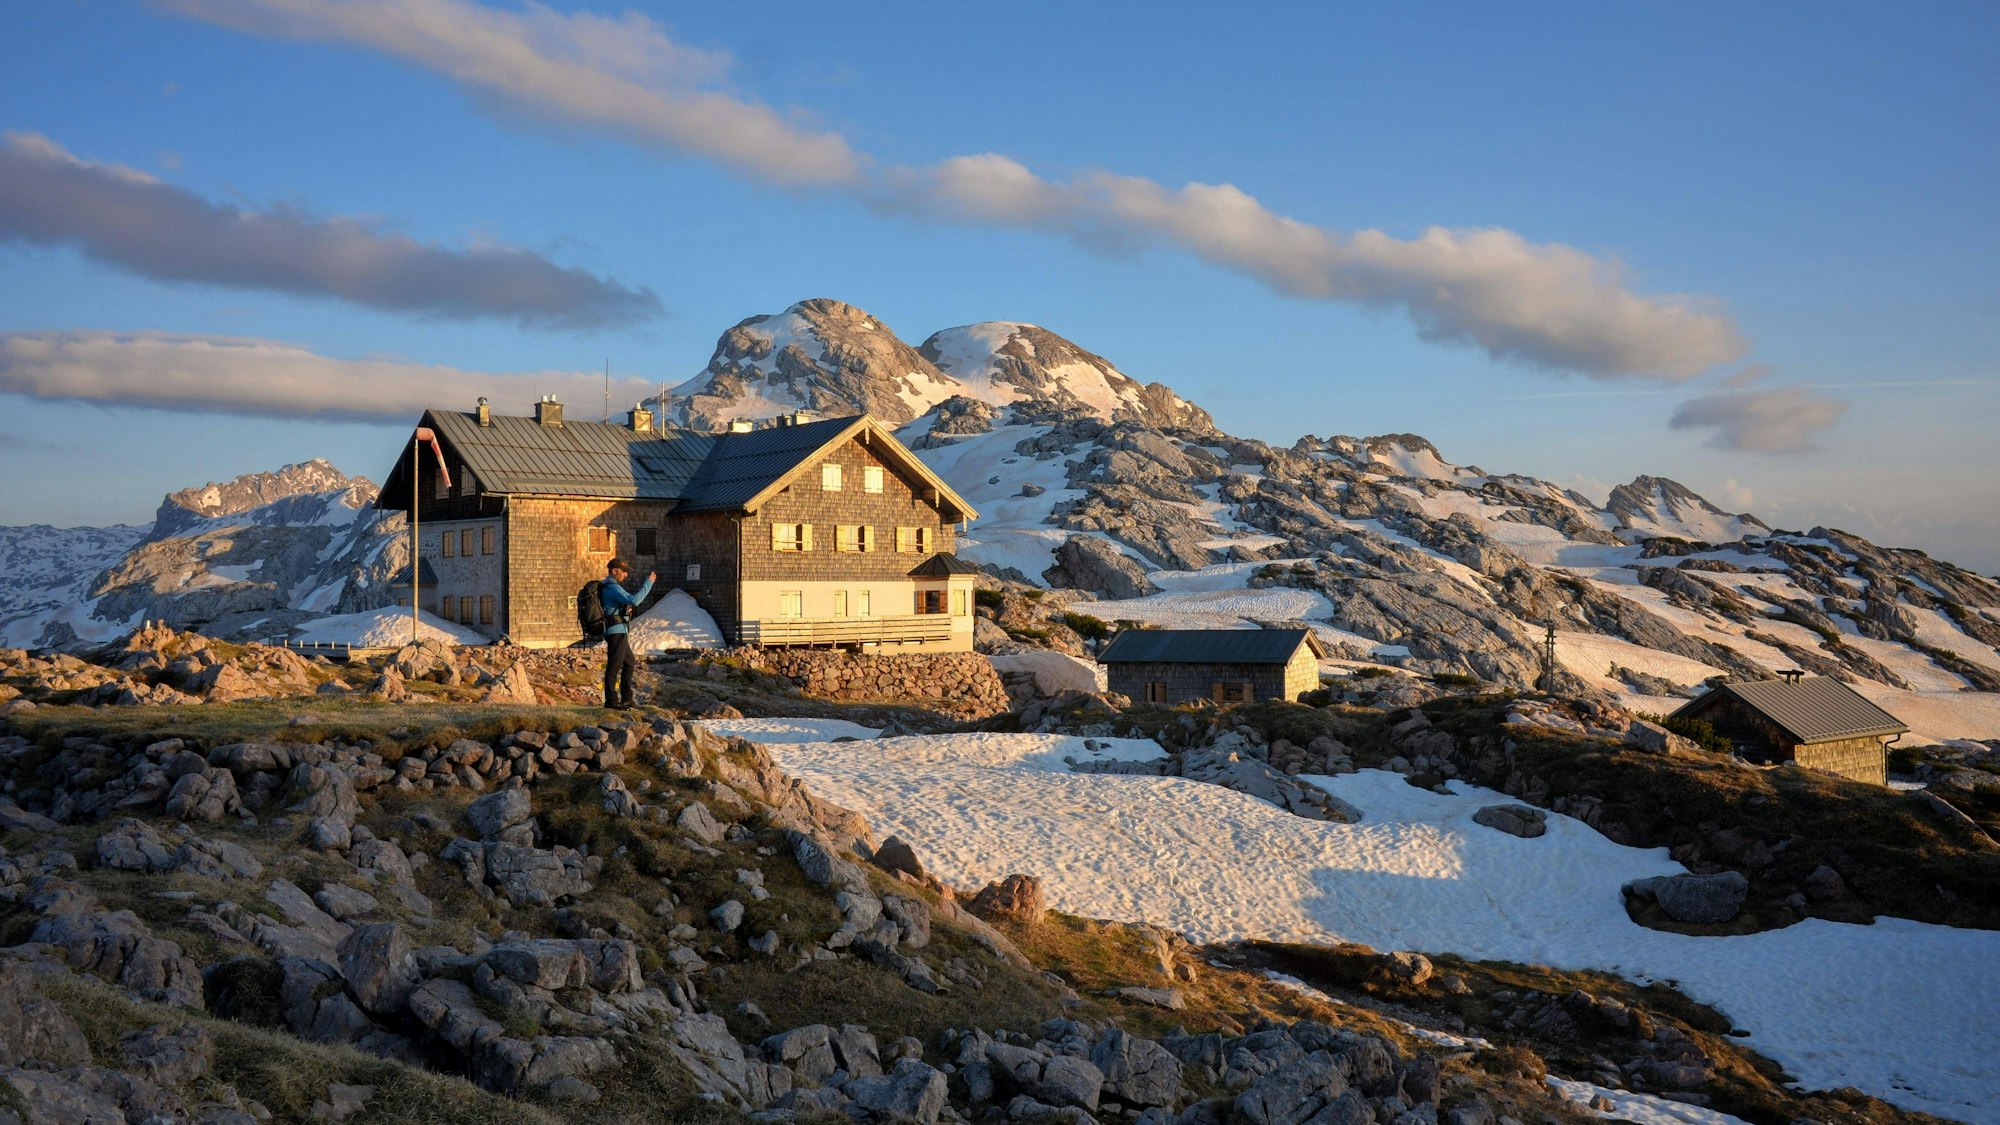 Das Ingolstädter Haus im Steinernen Meer in den Berchtesgardener Alpen. Die Hütte liegt auf mehr als 2000 Metern unmittelbar an der Grenze zwischen Deutschland und Österreich.